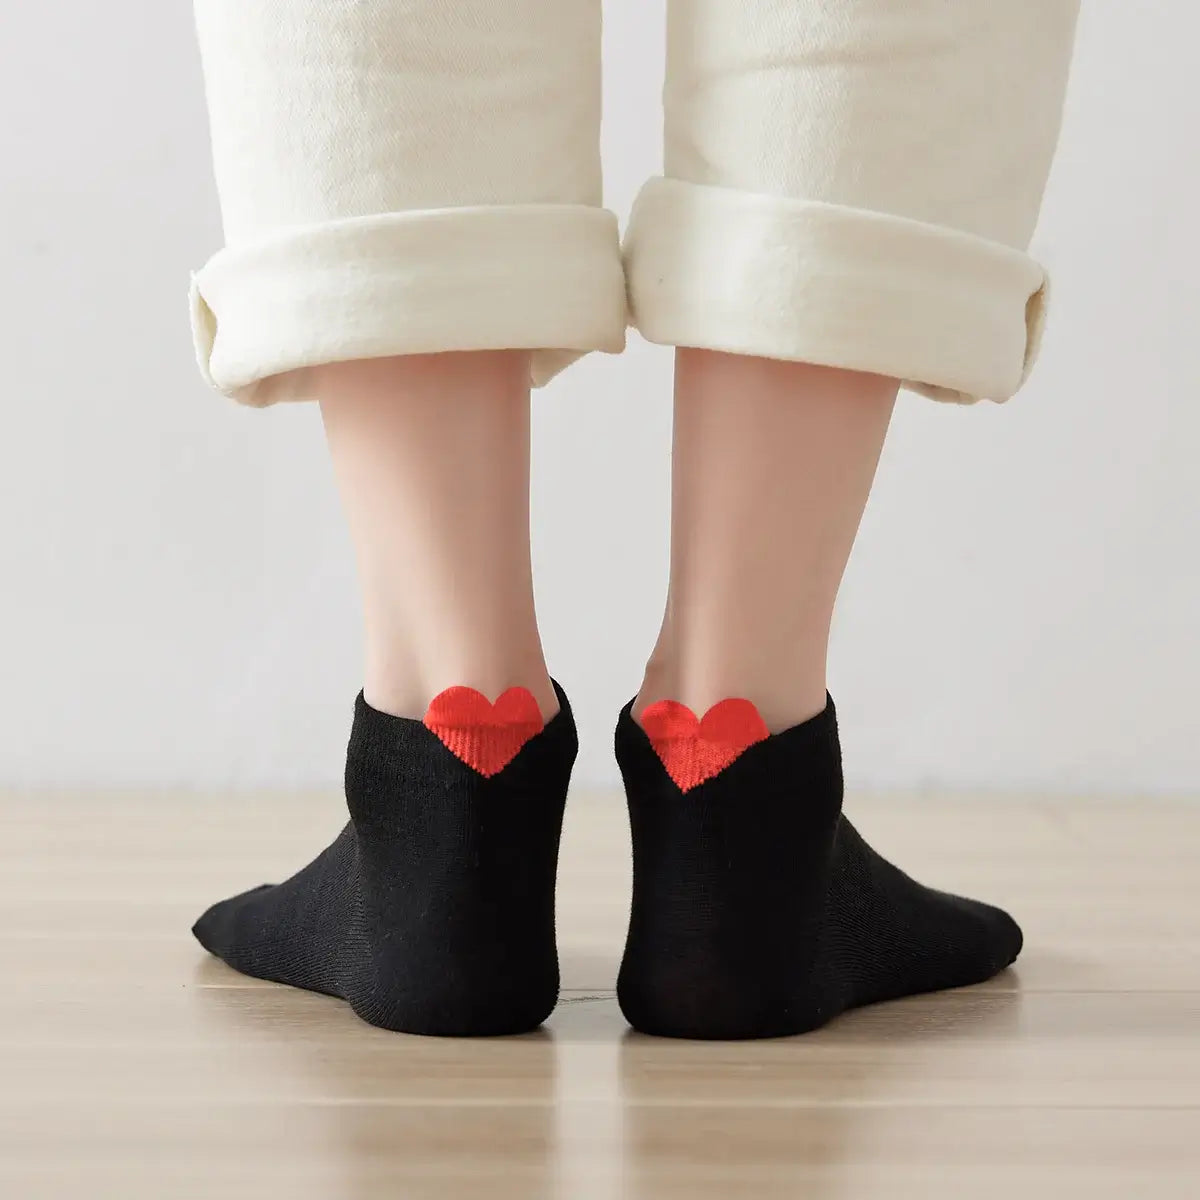 Chaussettes noir en coton unis Coup de Coeur pour femme | Chaussettes douces et respirantes | Un cadeau parfait pour les femmes de tous âges | Disponibles à un prix abordable.